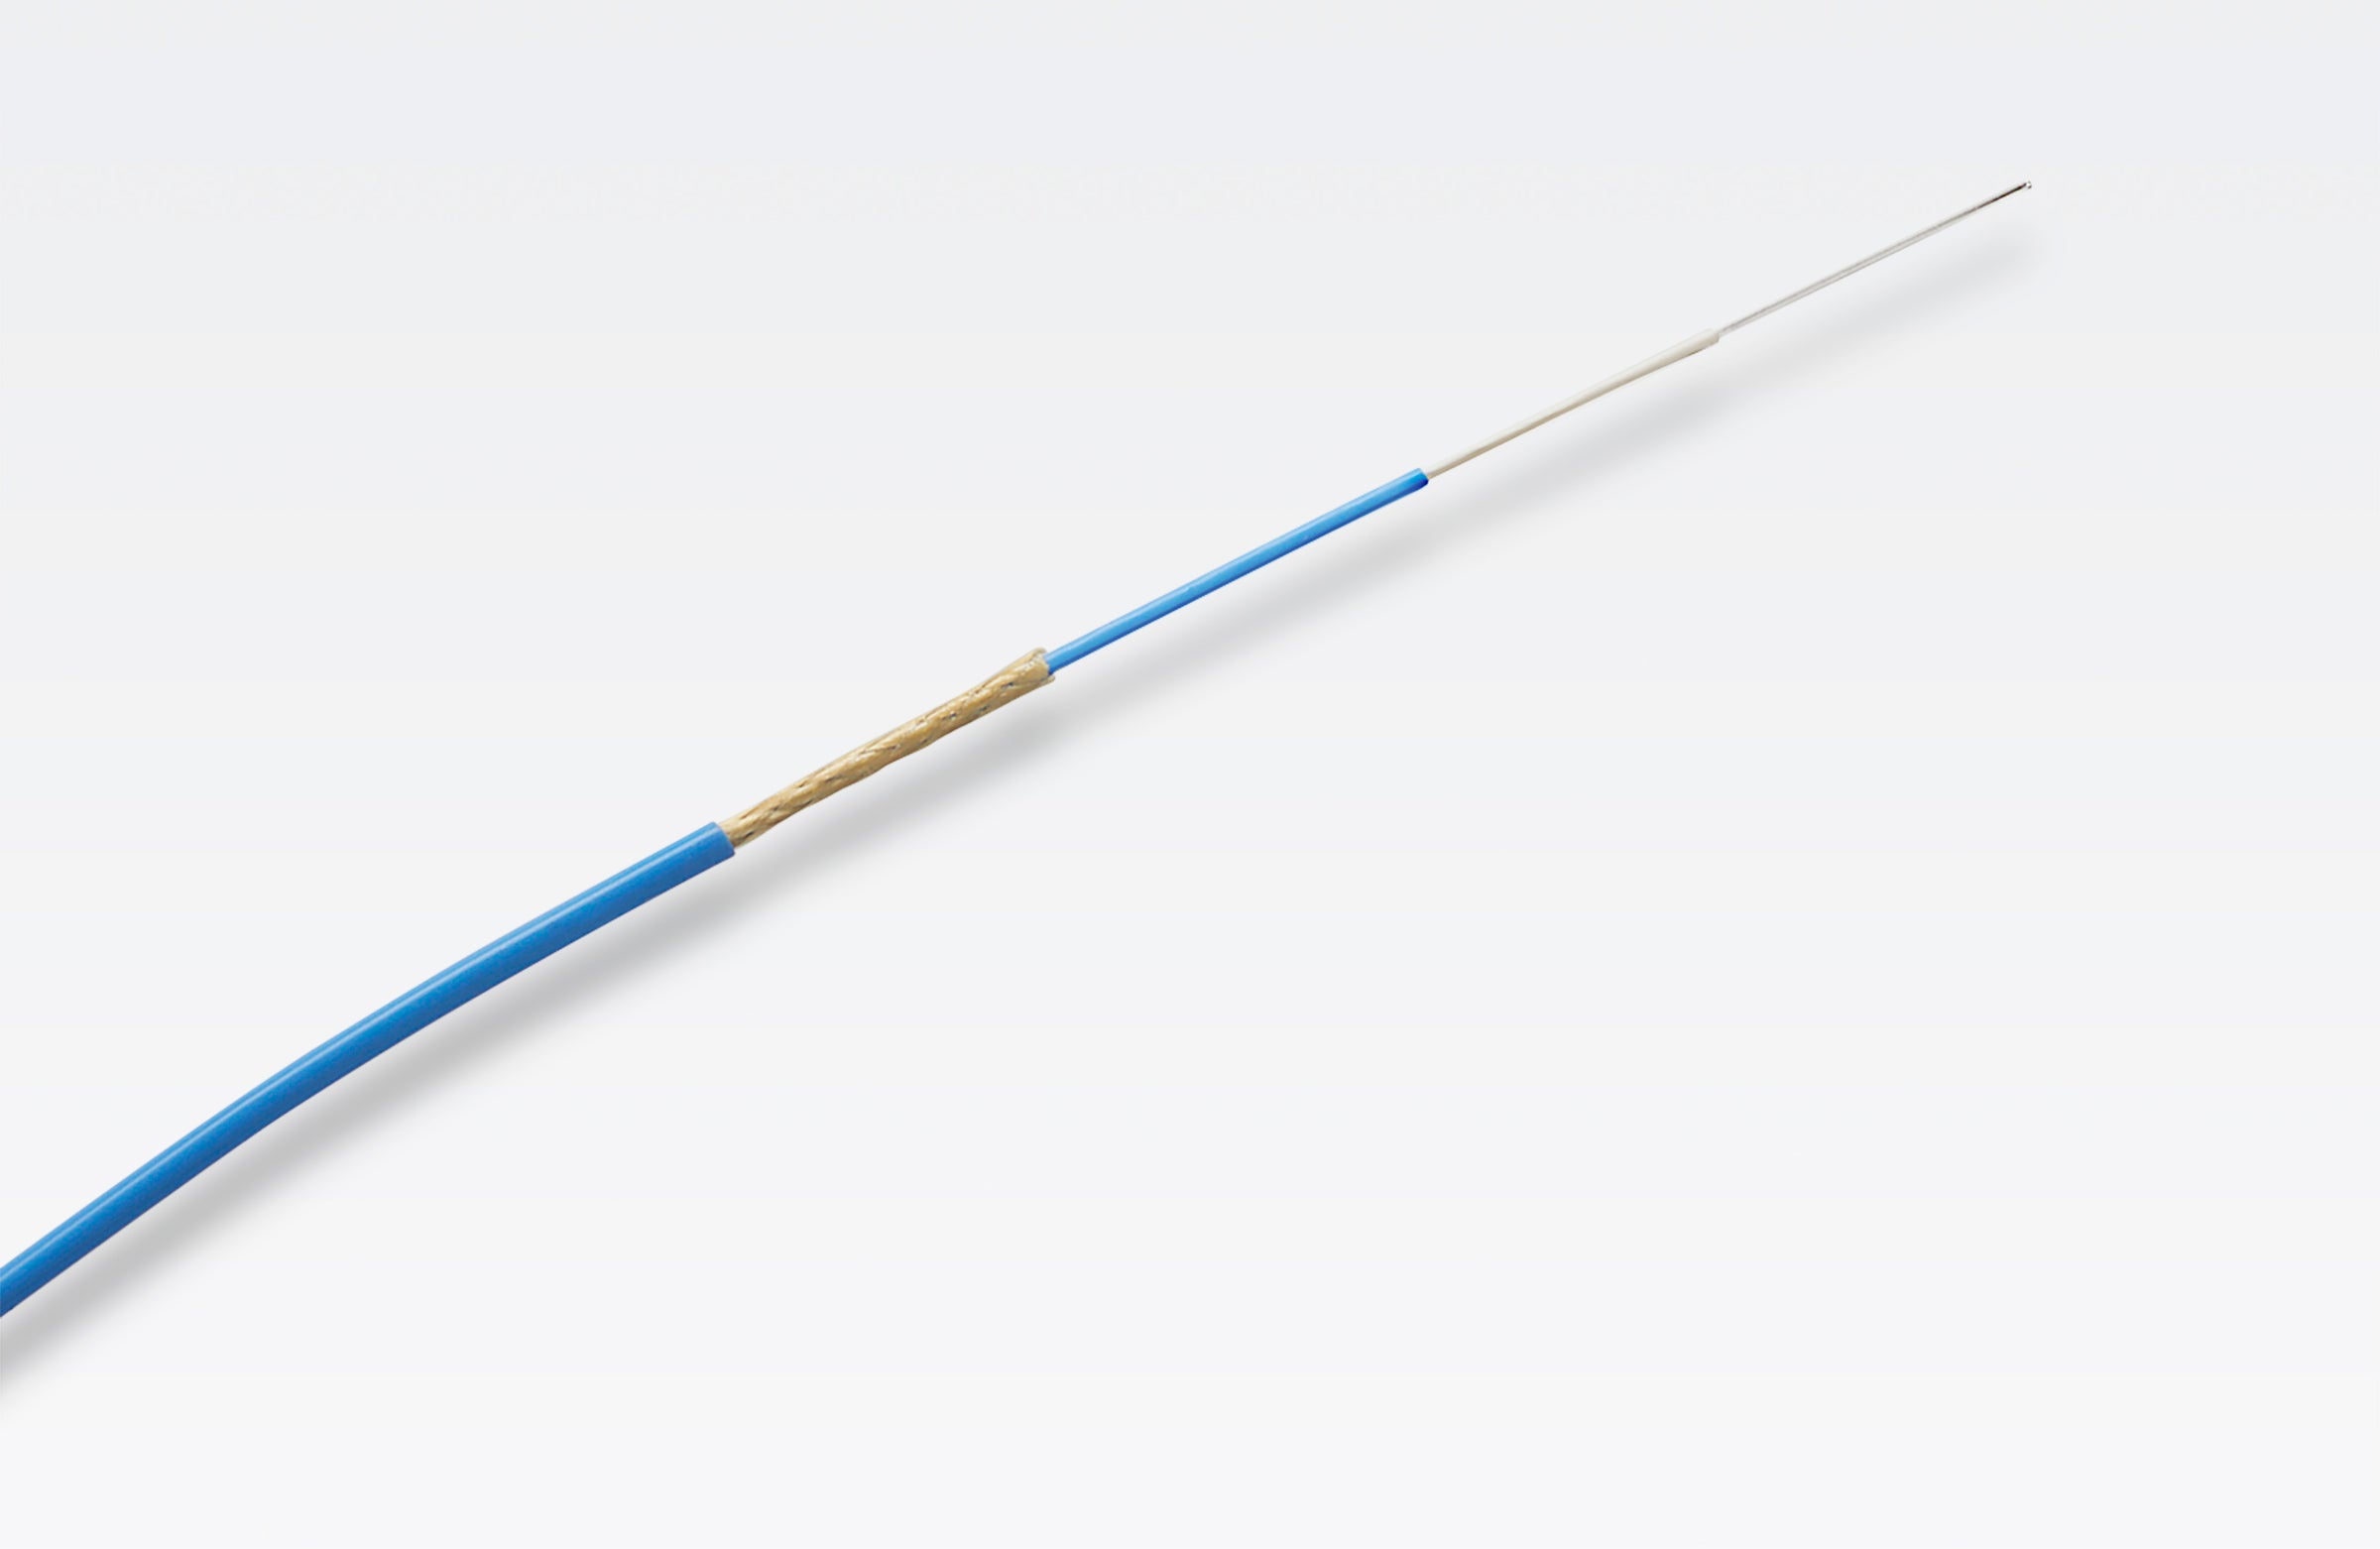 Gore’s 1.2 mm Simplex fiber optic cables.